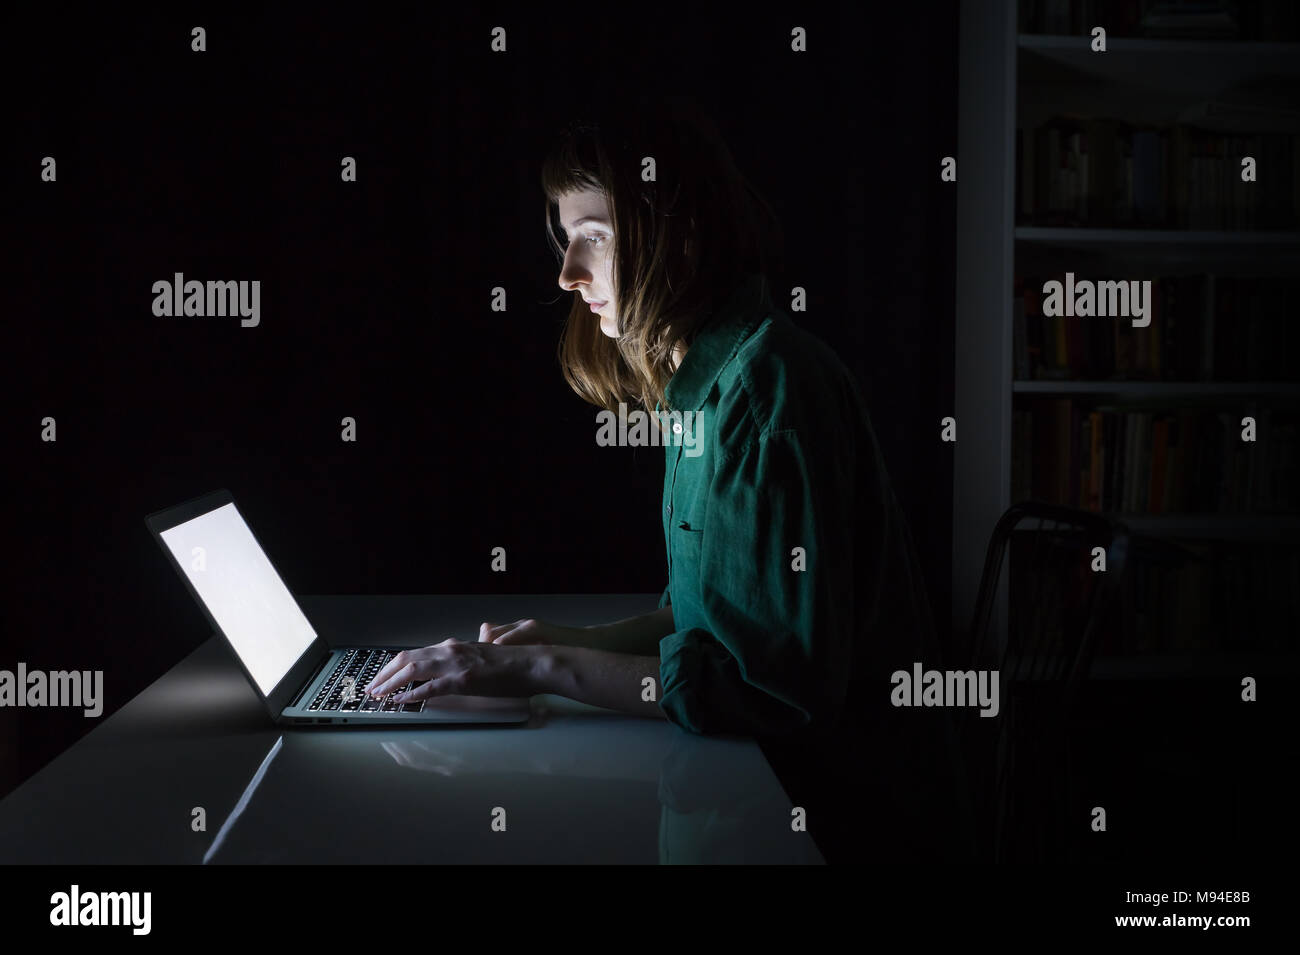 Femme travaille à l'ordinateur portable à la fin de la soirée. Portrait de jeune femme étudiant ou travailleur assis en face de l'écran de l'ordinateur pendant la nuit et en tapant Banque D'Images